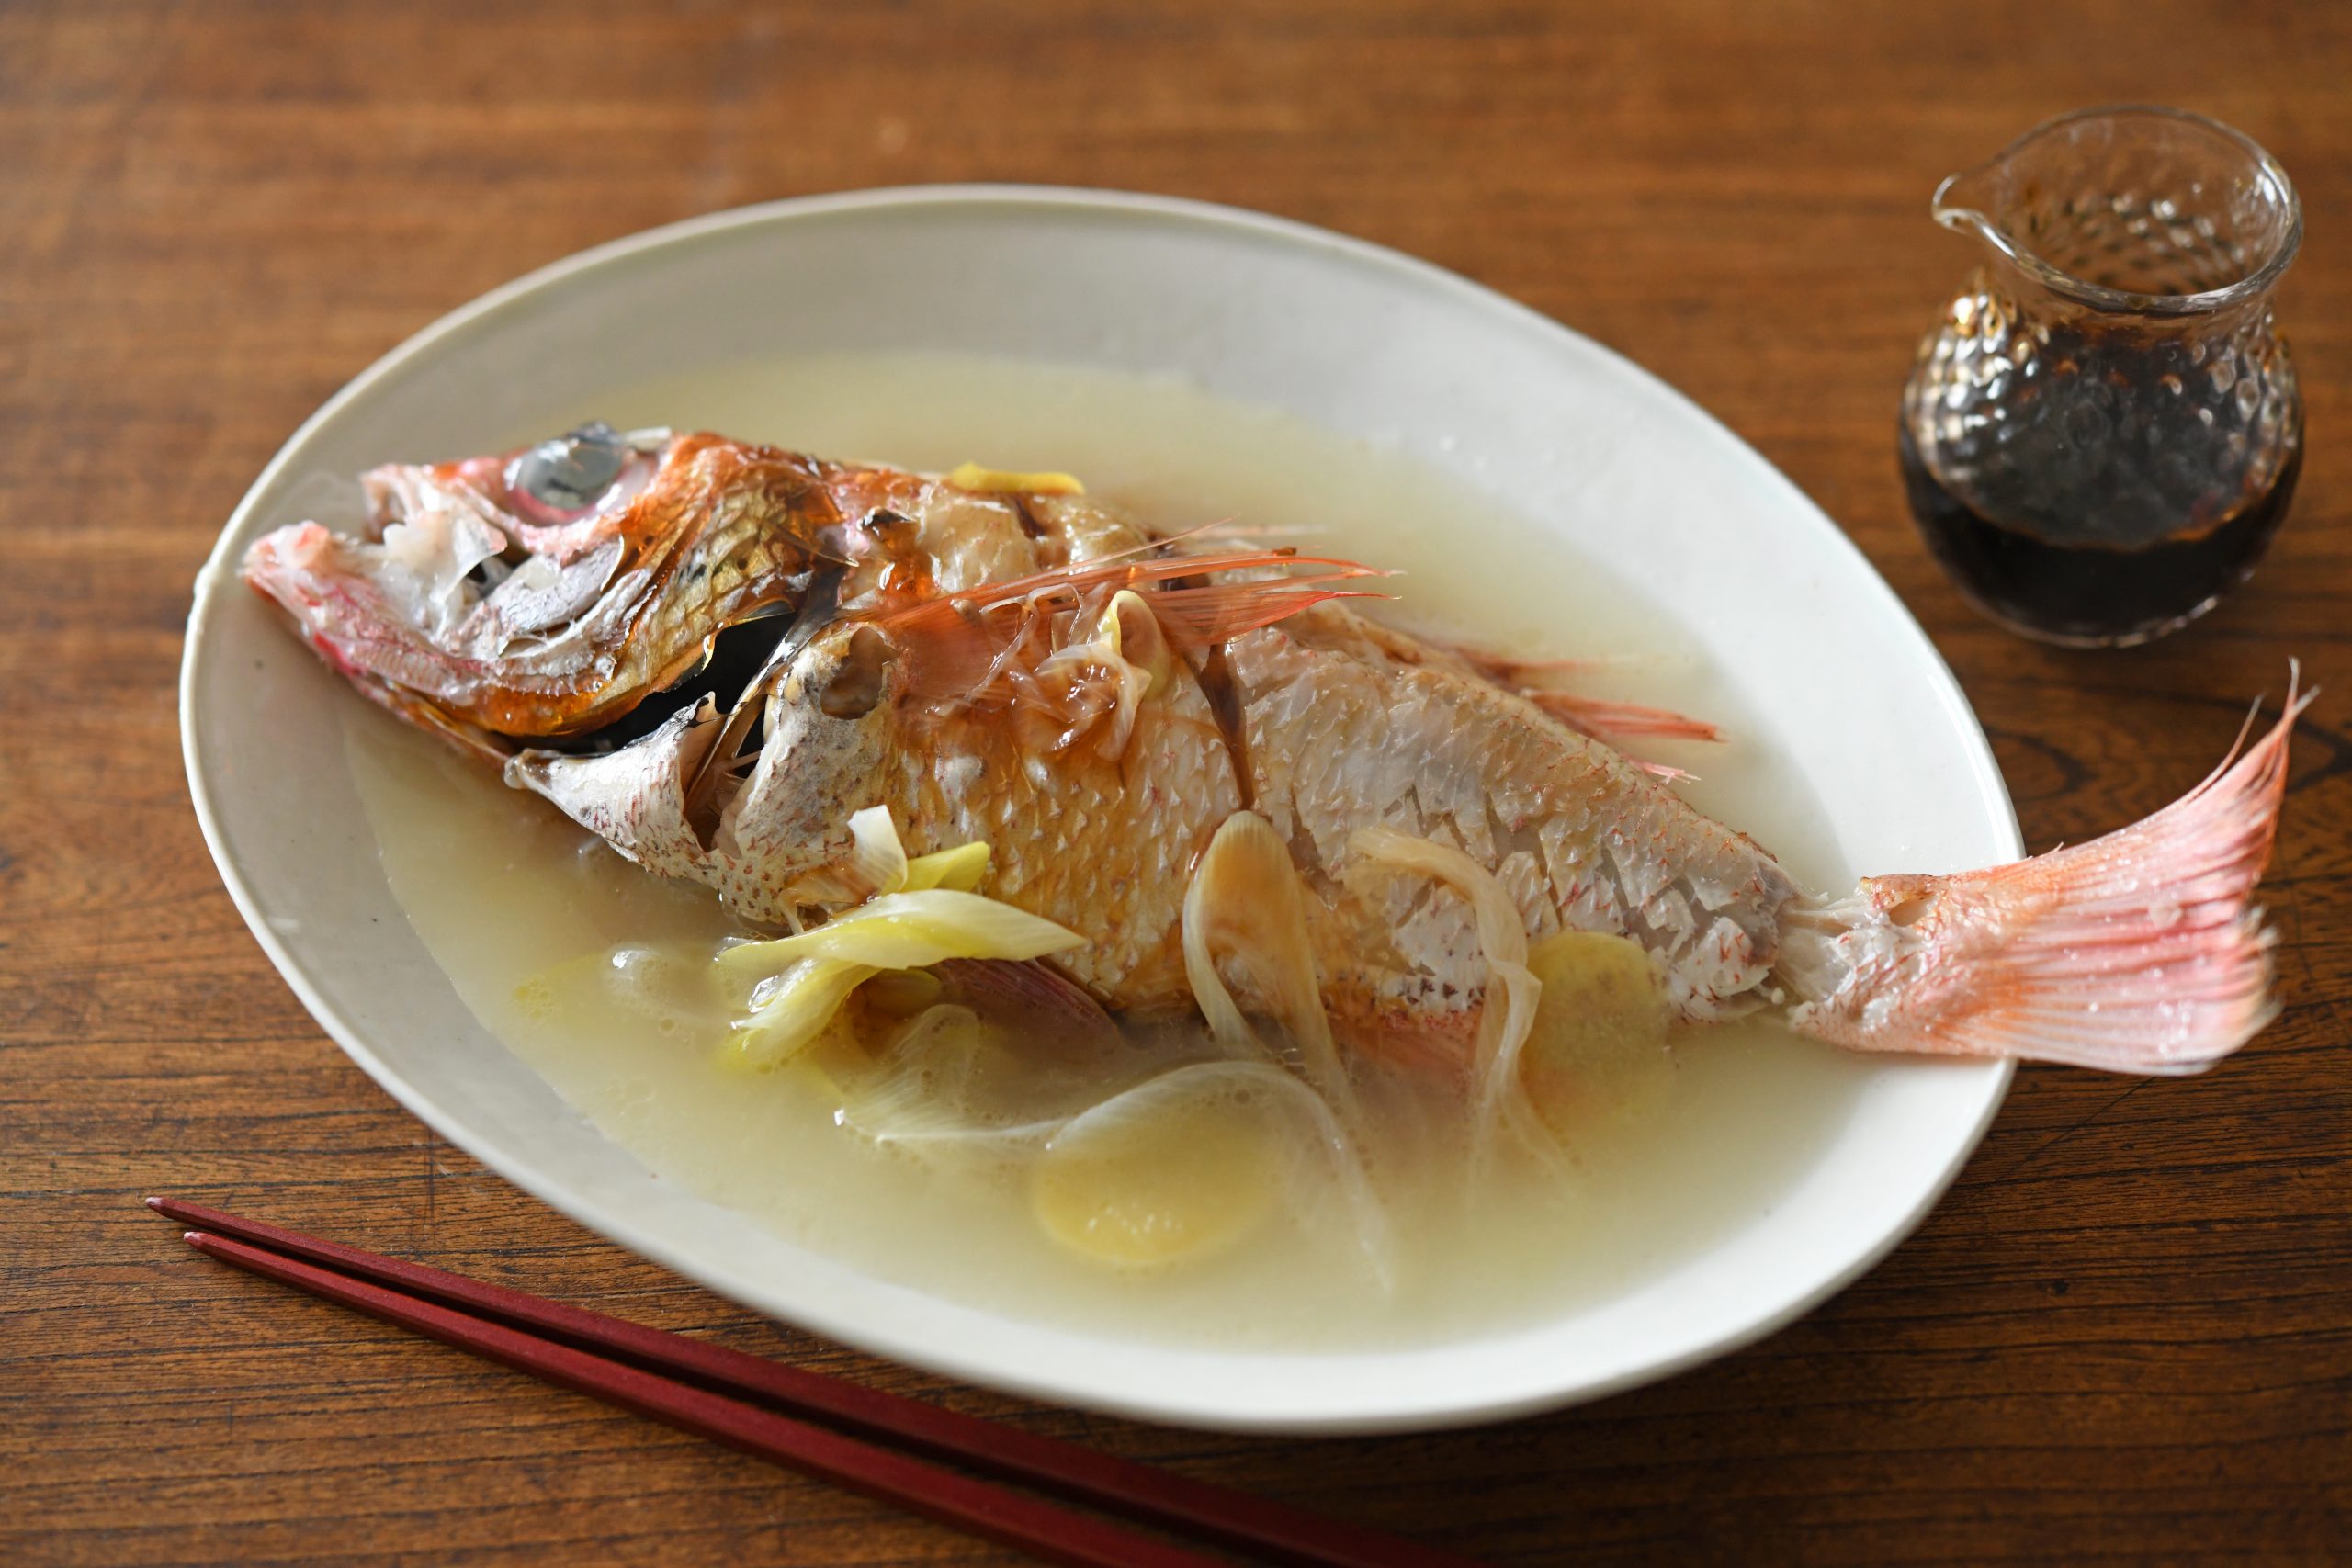 アカムツの酒蒸し 海の恵み 食の底力 Japan 公式レシピサイト